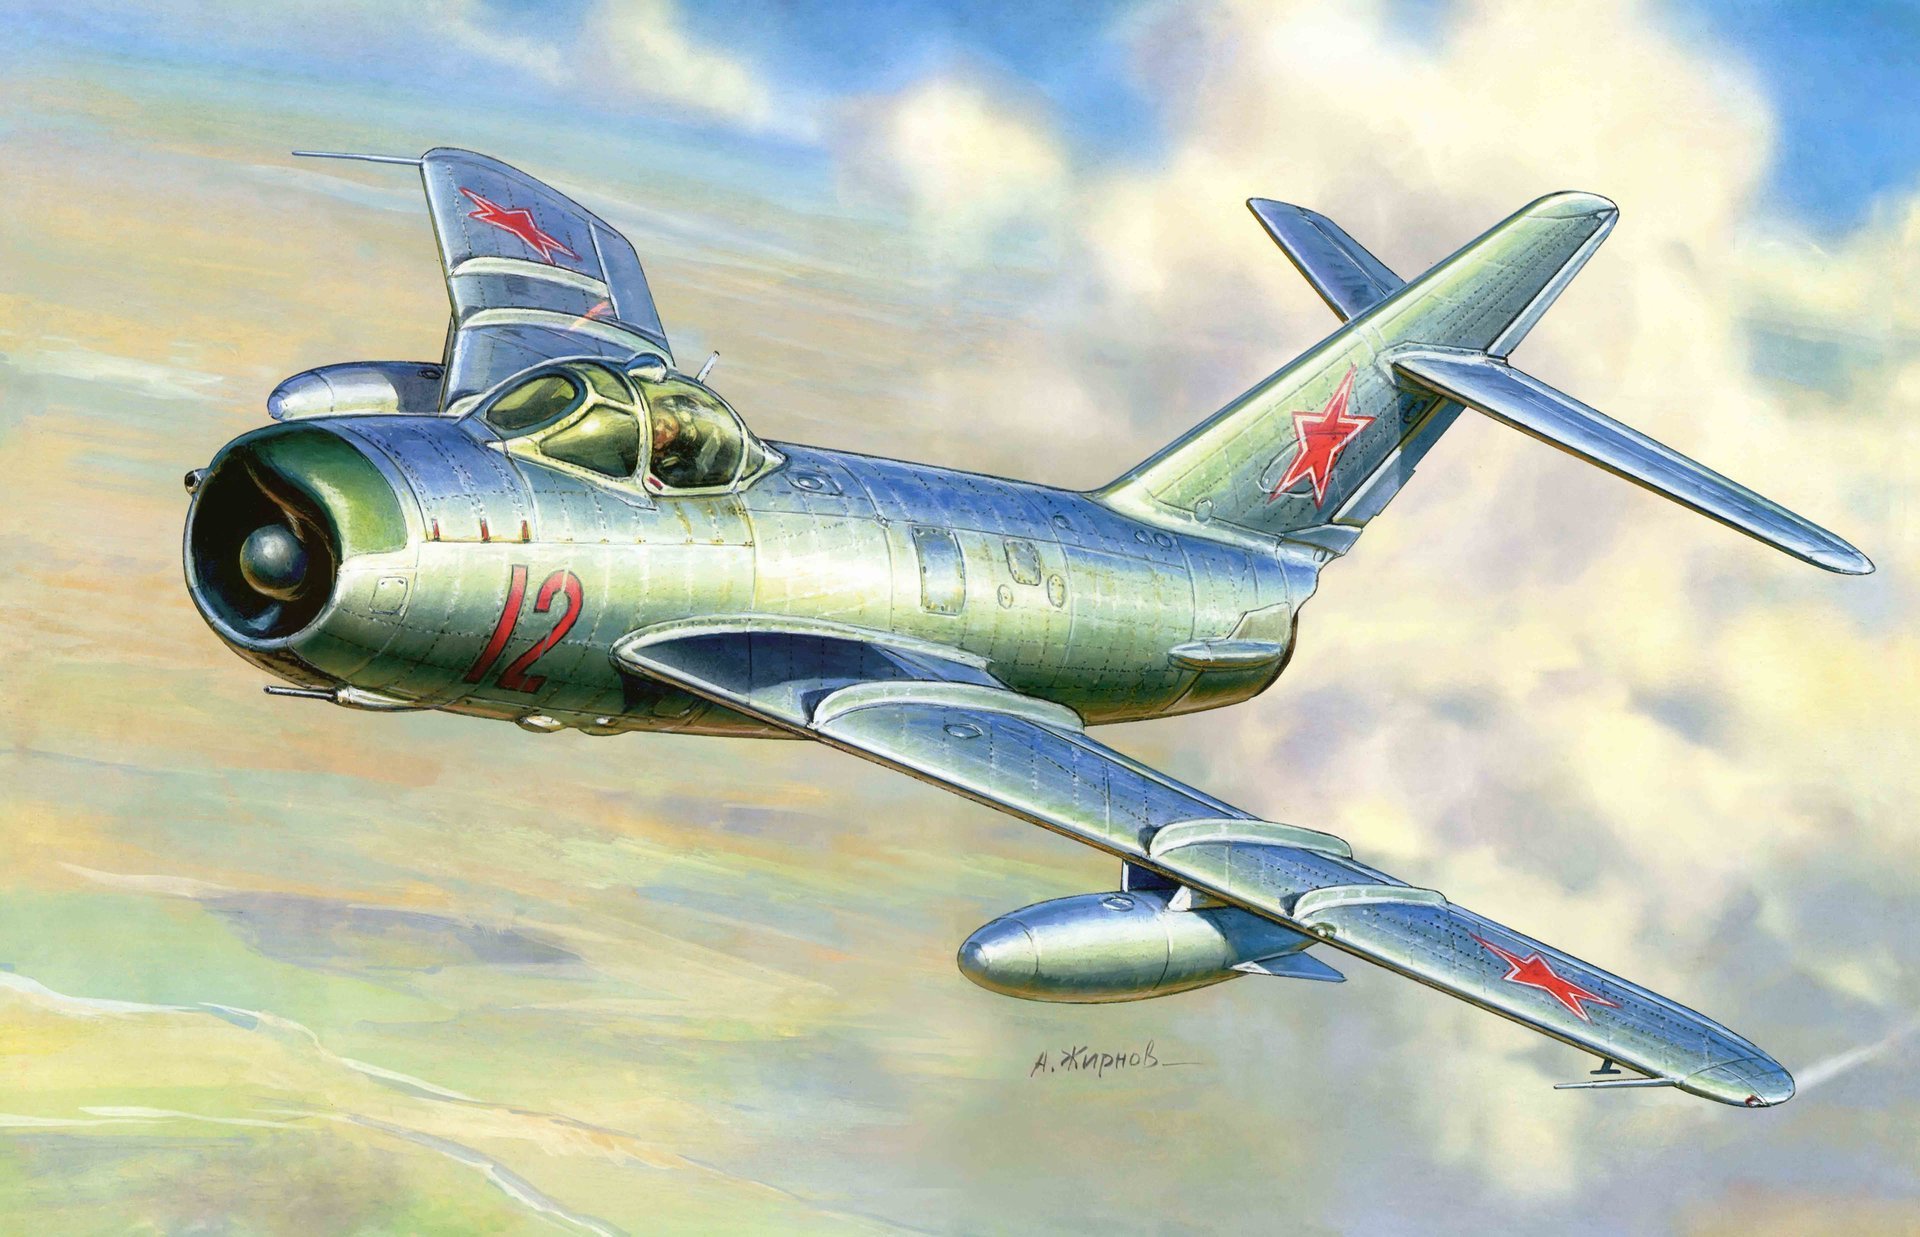 арт самолет миг-17 советский реактивный истребитель разработанный окб микояна и гуревича в конце 1940-х.г. всех с 23 февраля с праздником!.